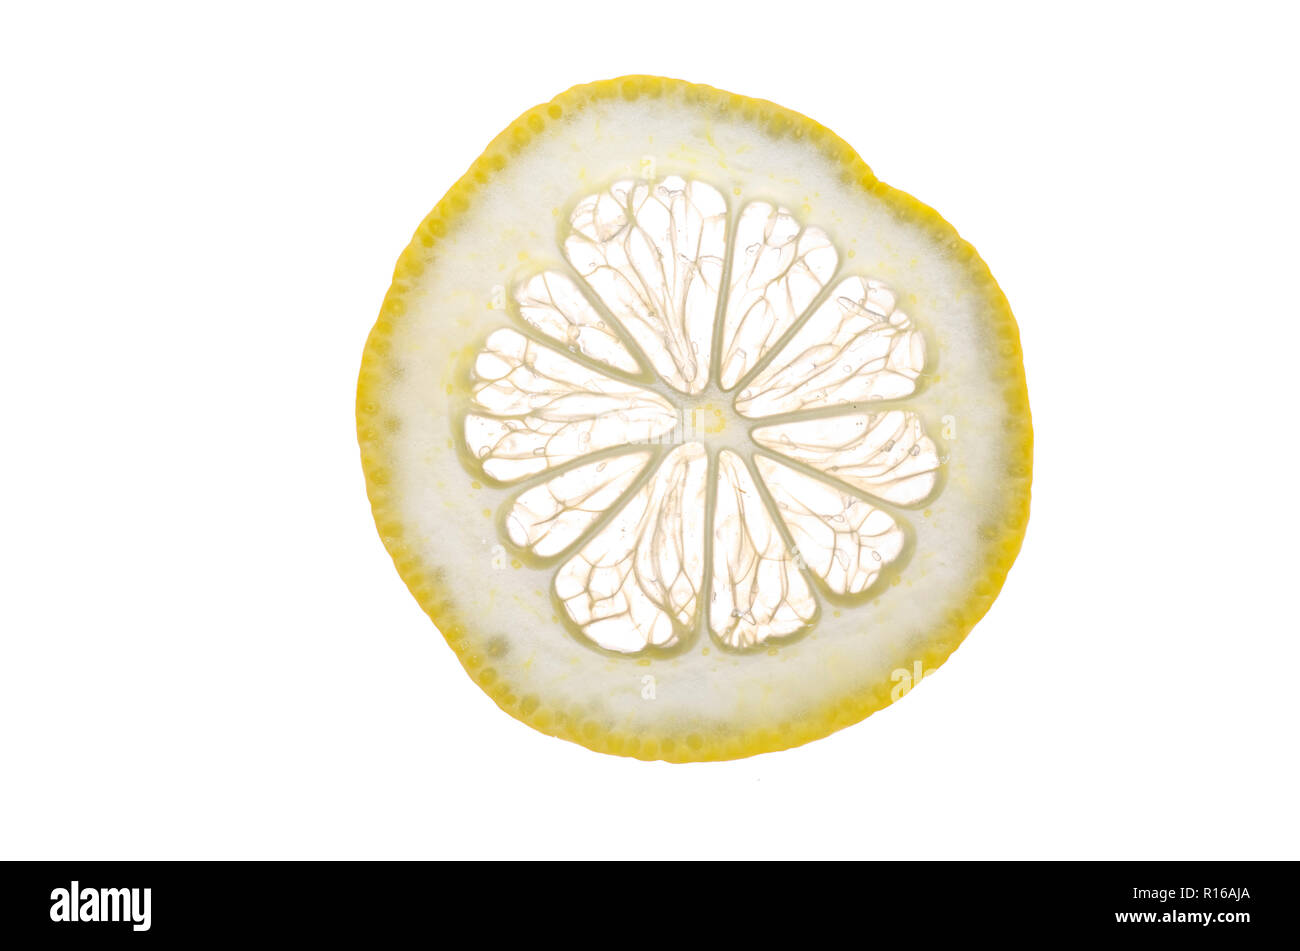 Slice of fresh lemon against white background Stock Photo